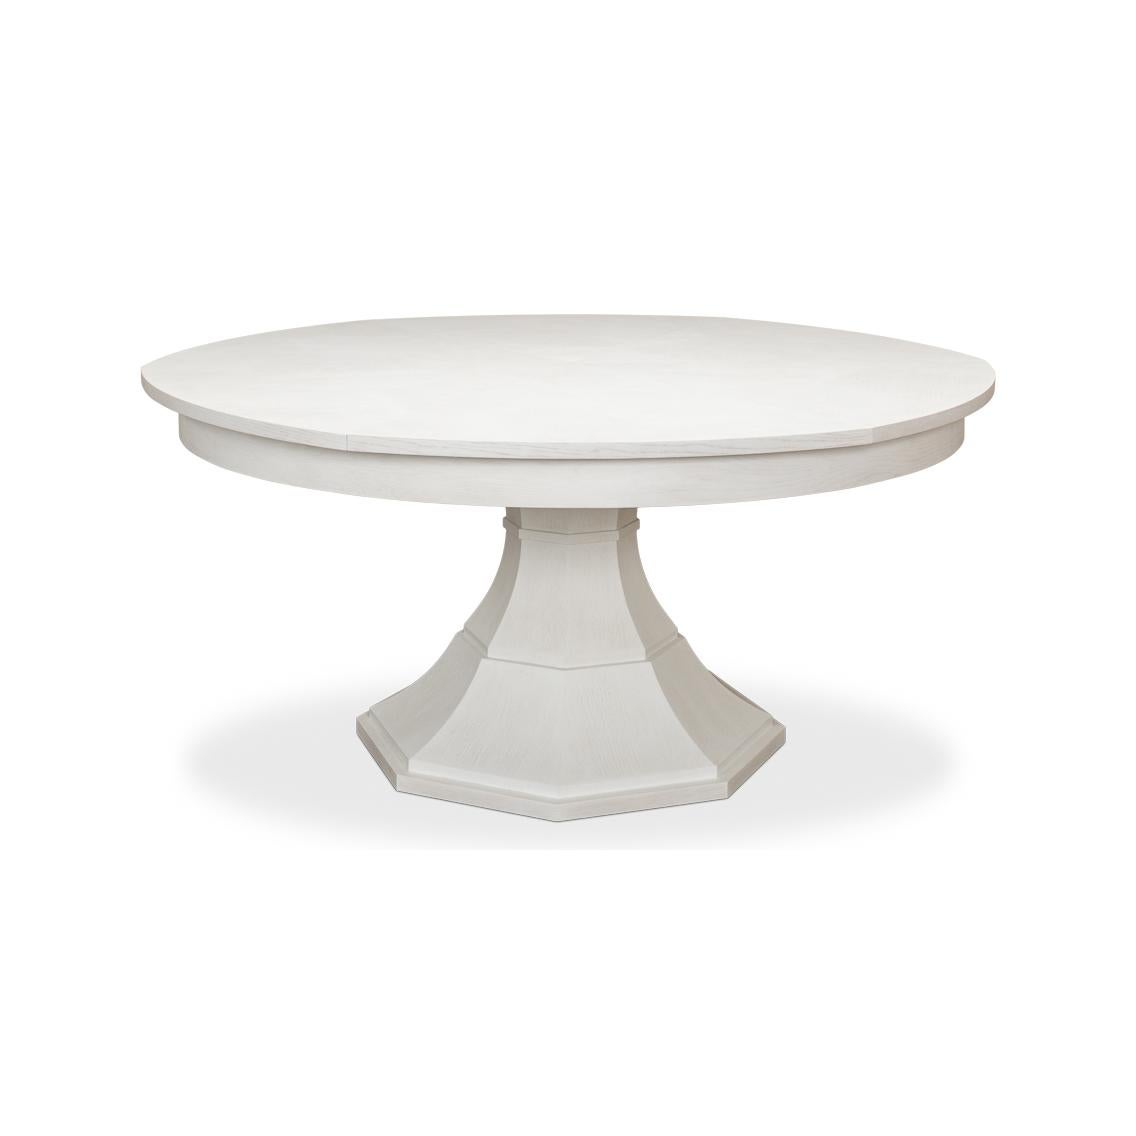 Table de salle à manger Jupe moderne ronde en placage de chêne peint en blanc, avec des feuilles à ranger soi-même, sur un socle en forme de colonne fuselée.
Dimensions ouvertes : 84